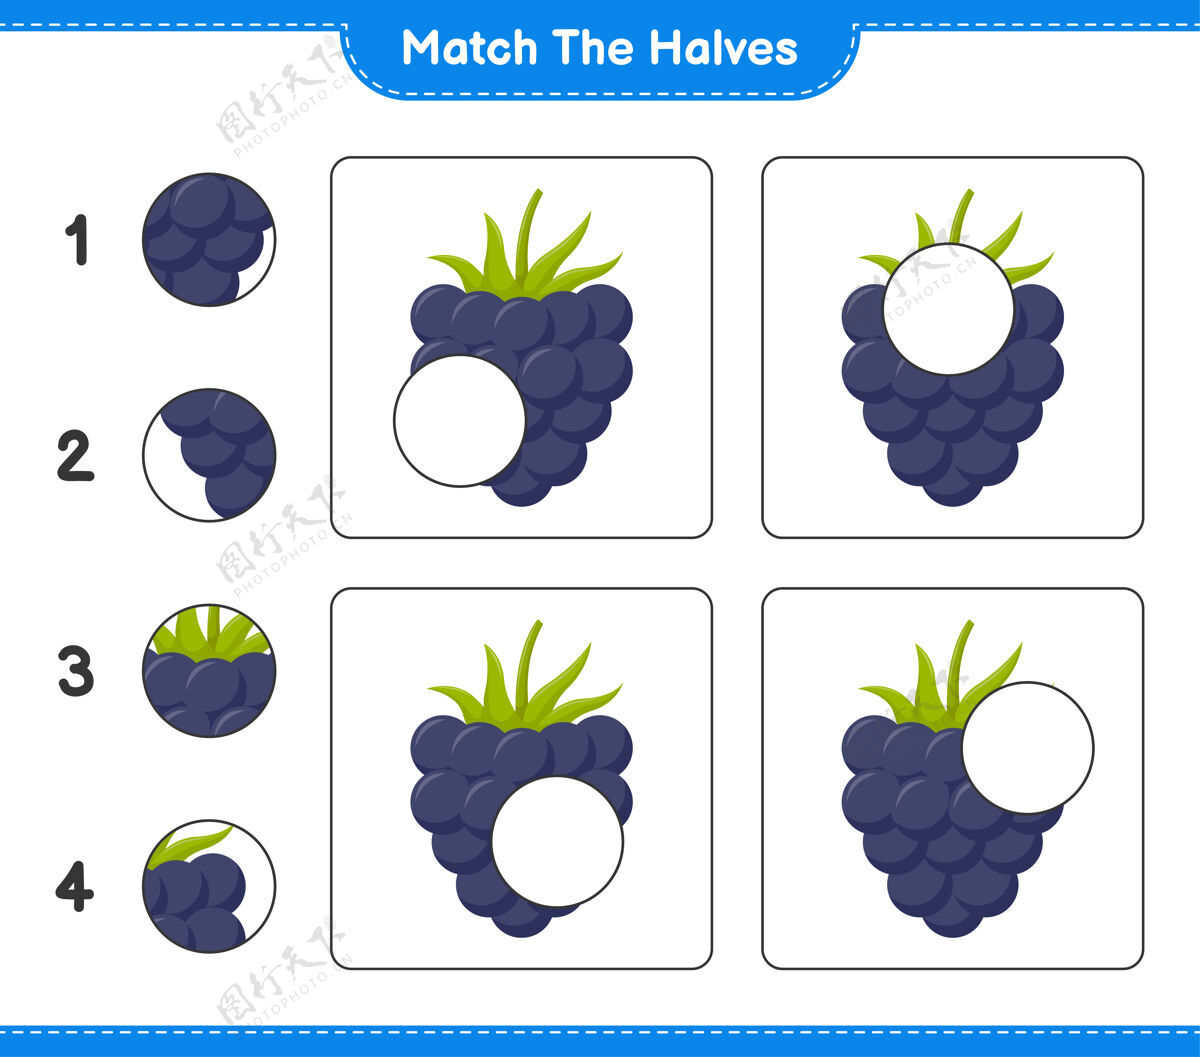 黑莓匹配对半匹配一半黑莓.教育儿童游戏 可打印工作表匹配游戏比赛方向